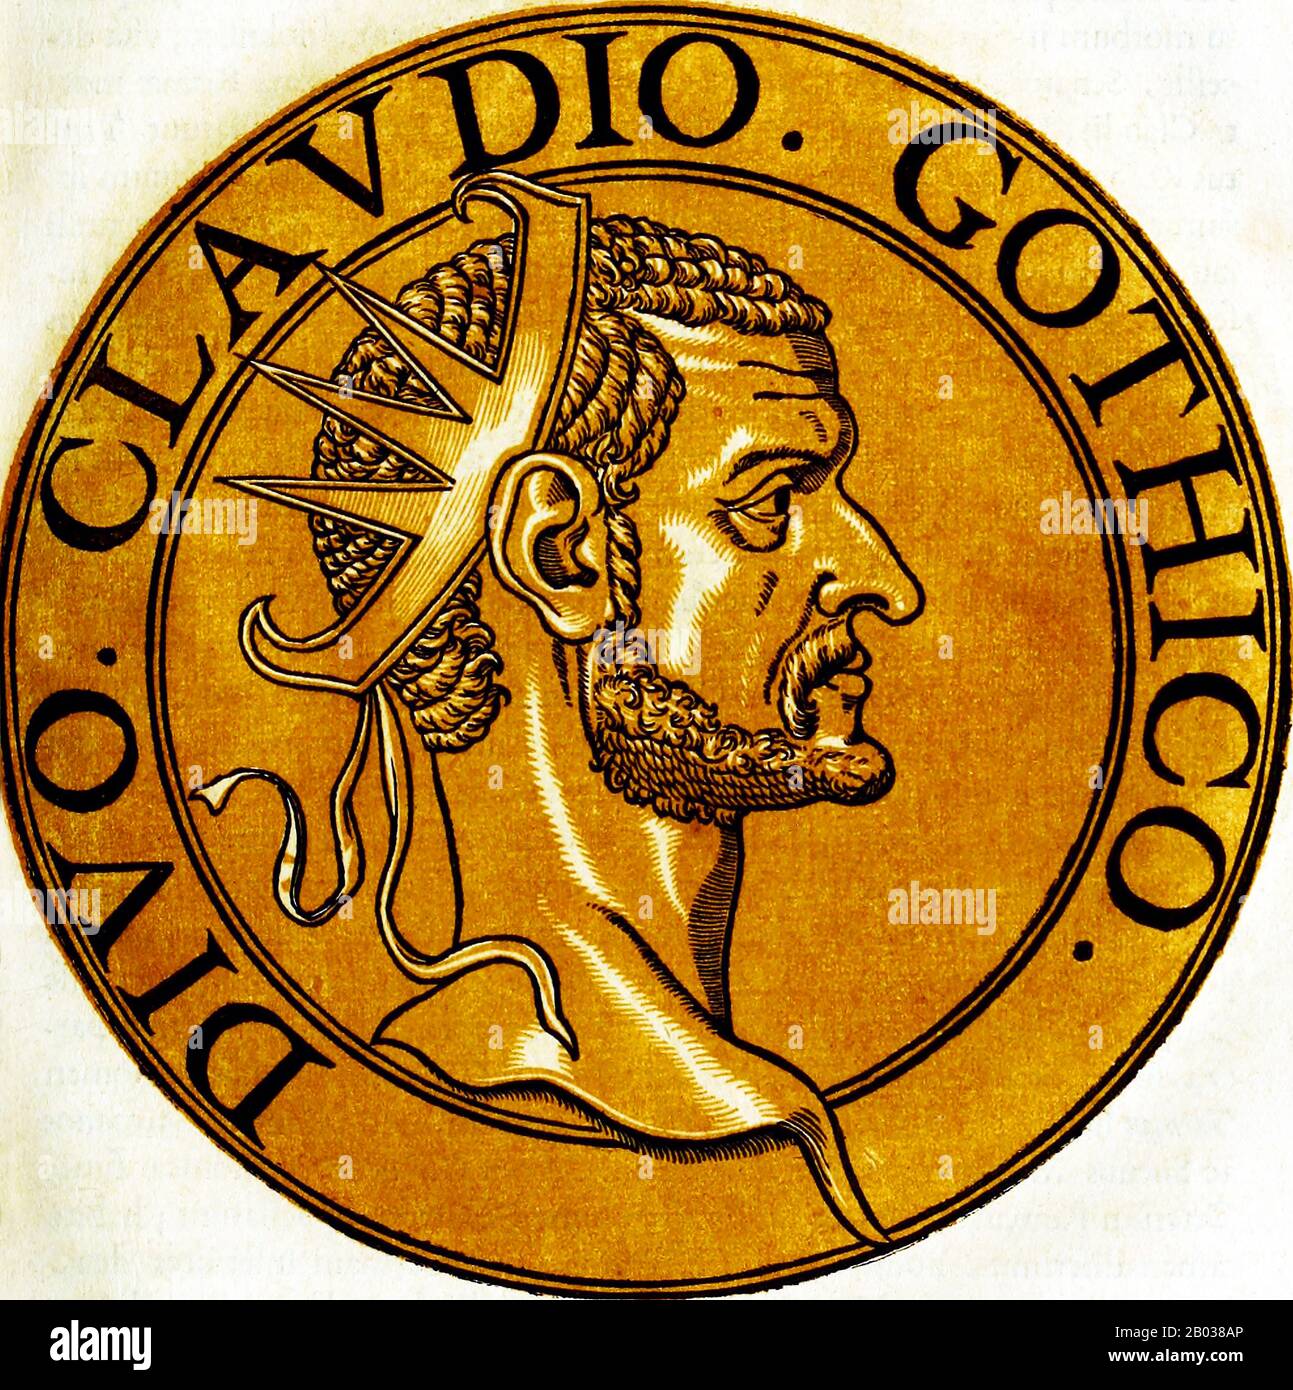 Claudius II (210-270), auch Claudius Gothicus genannt, war illyrischen Ursprungs und barbarischer Geburt. Er war Berufssoldat, er diente sein ganzes Erwachsenenleben in der römischen Armee. Er war während der Belagerung von Mailand im Jahr 268 Militärdreibund in der Armee von Kaiser Gallienus, als Gallienus von seinen eigenen fünfzialen, möglicherweise einschließlich Claudius, ermordet wurde. Claudius wurde dann von seinen eigenen Soldaten, möglicherweise wegen seiner körperlichen Stärke und Grausamkeit, zum Kaiser ausgerufen. Claudius war wie der vorherige barbarische Kaiser Maximinus Thrax ein Soldatenkaiser, der erste in einer Serie, die das Reich wieder herstellen sollte Stockfoto